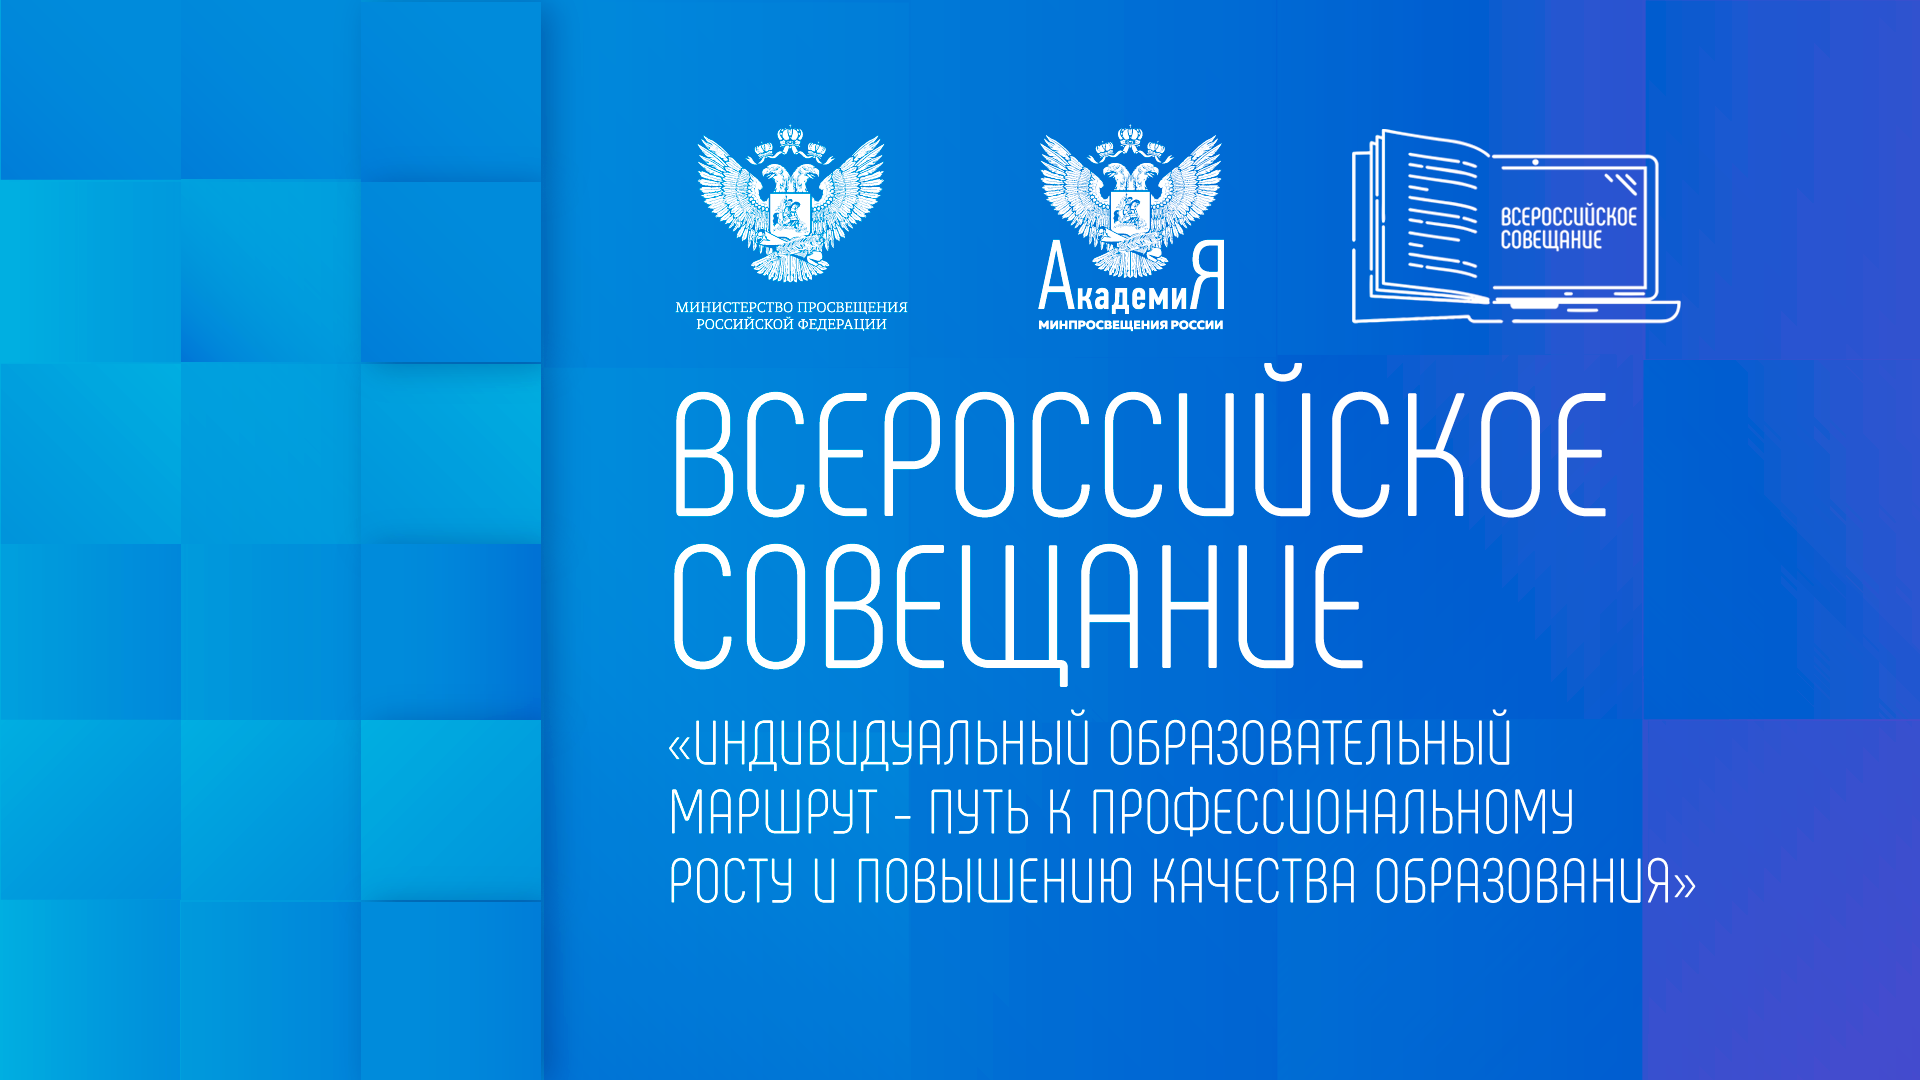 Всероссийское совещание «Индивидуальный образовательный маршрут – путь к профессиональному росту и повышению качества образования» состоится 12 октября 2022 г.